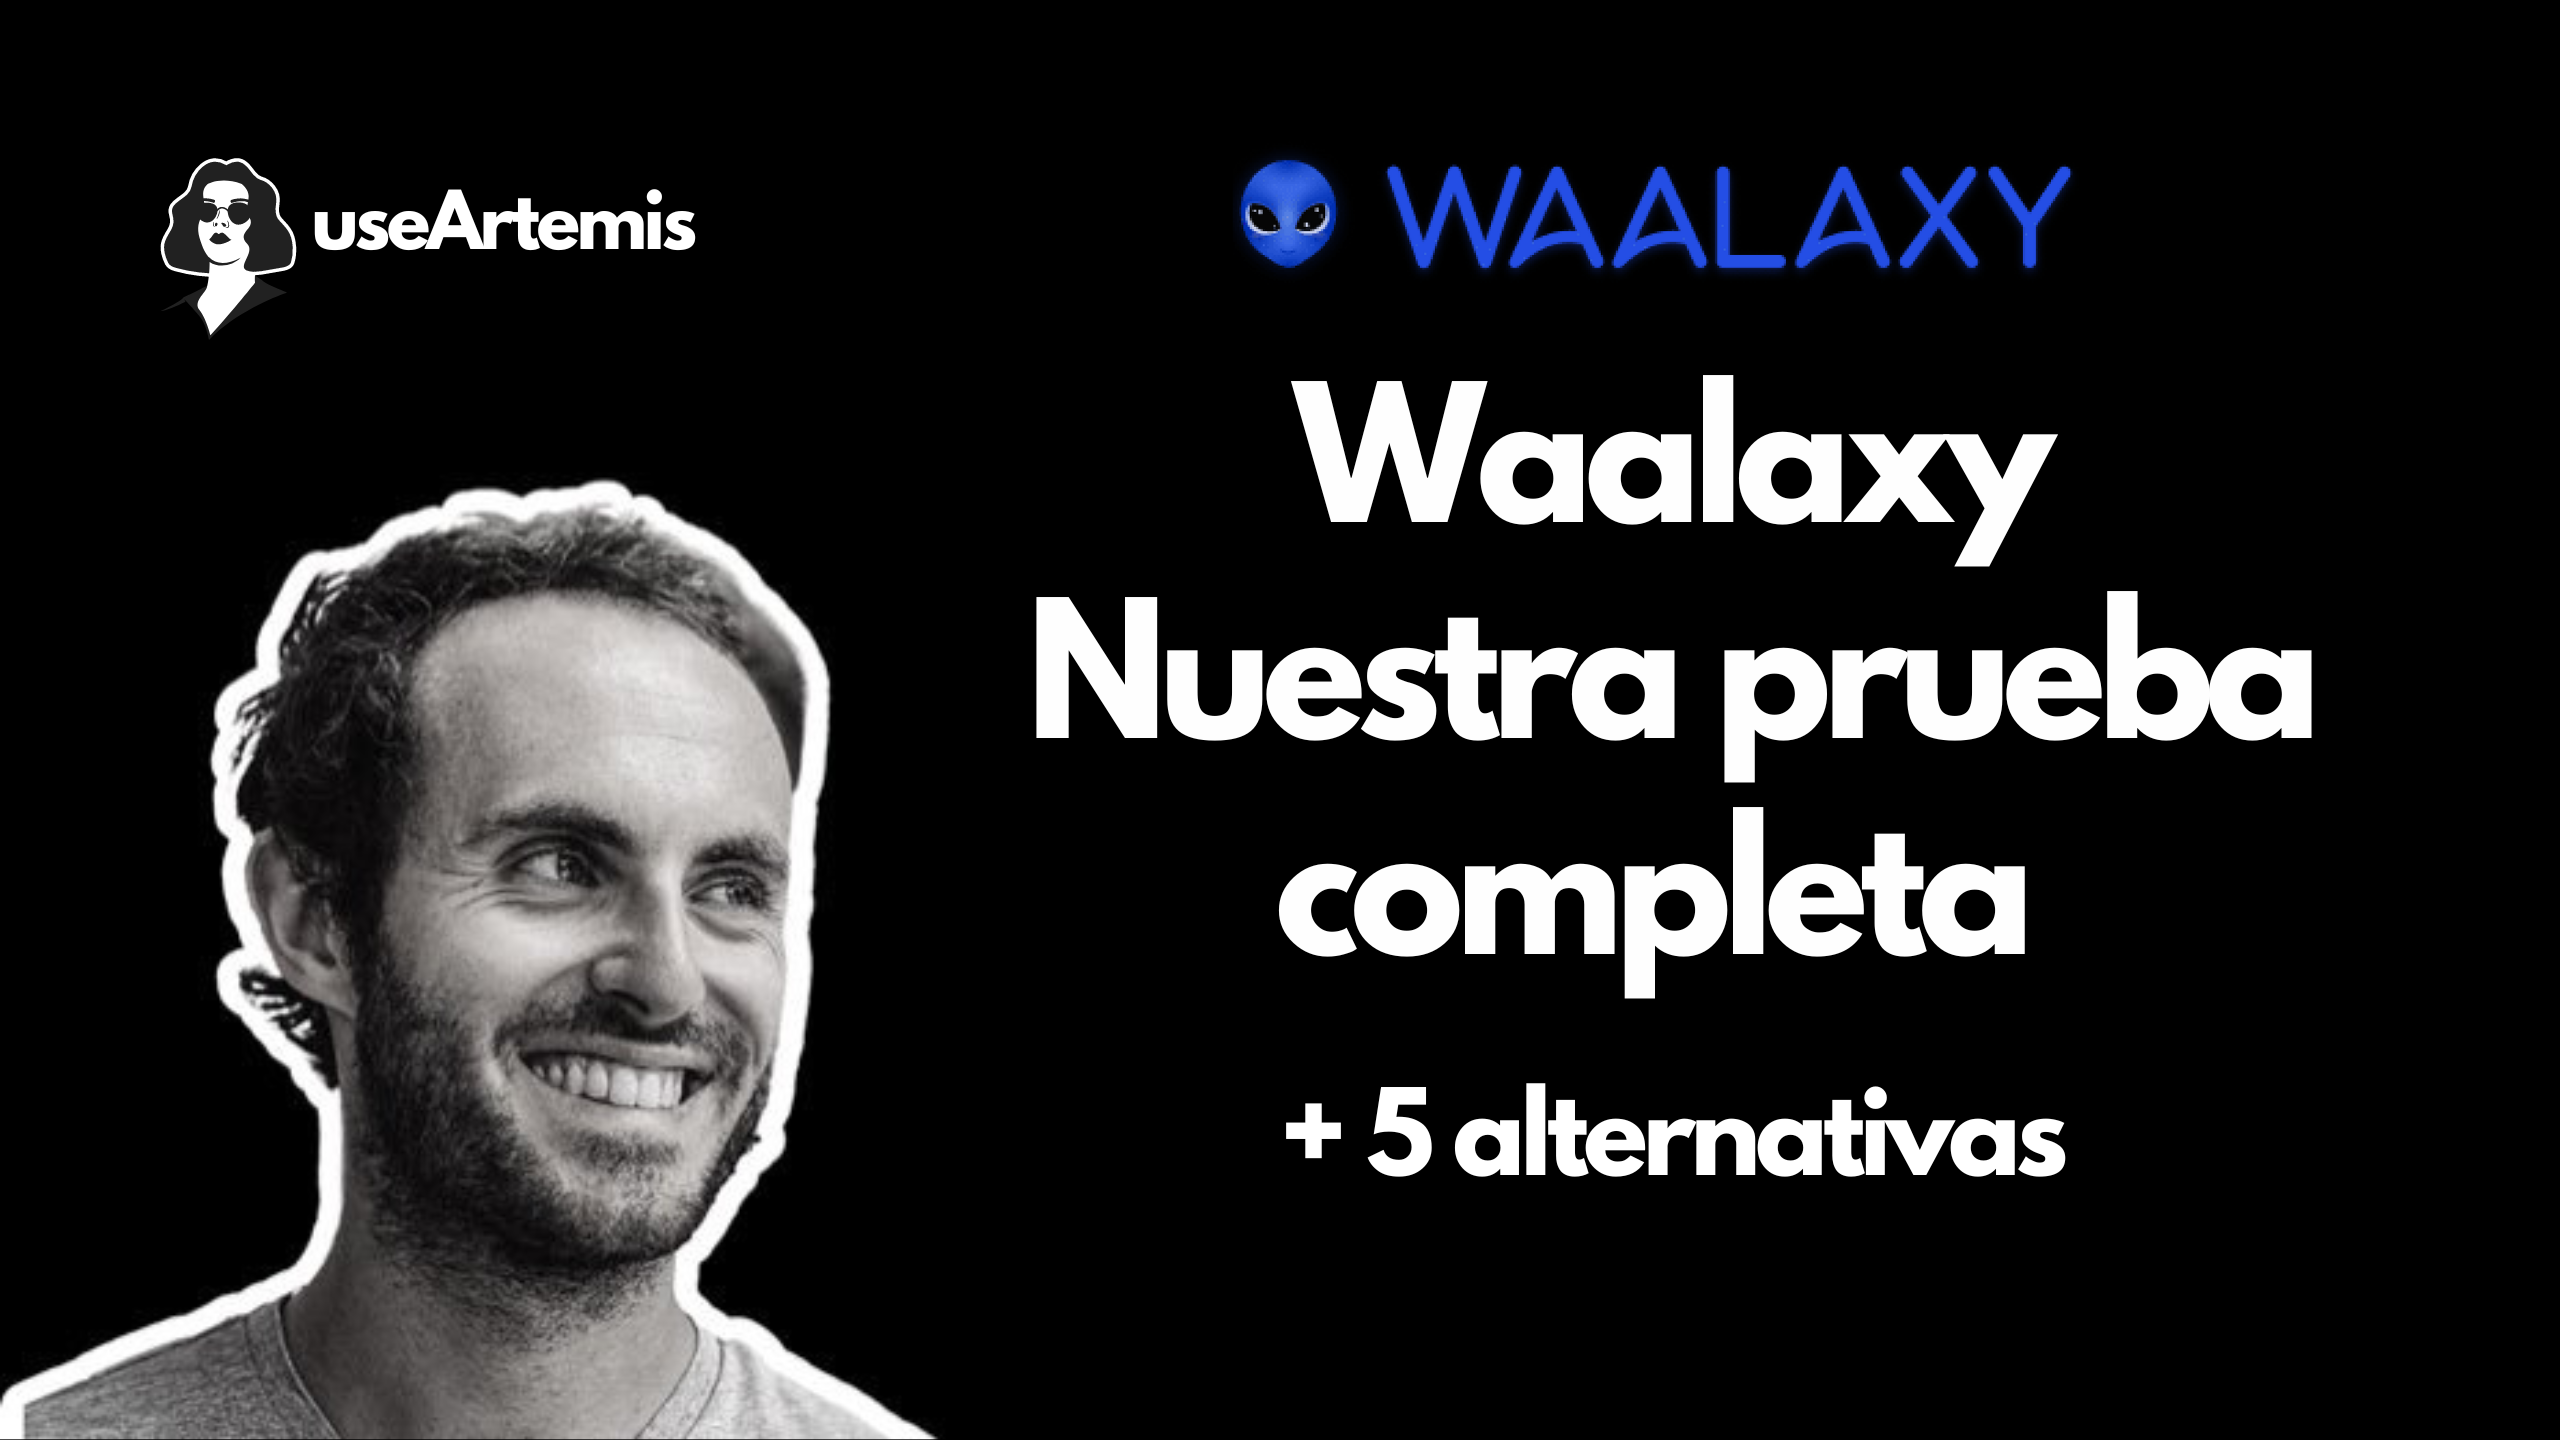 Waalaxy: Nuestra prueba completa